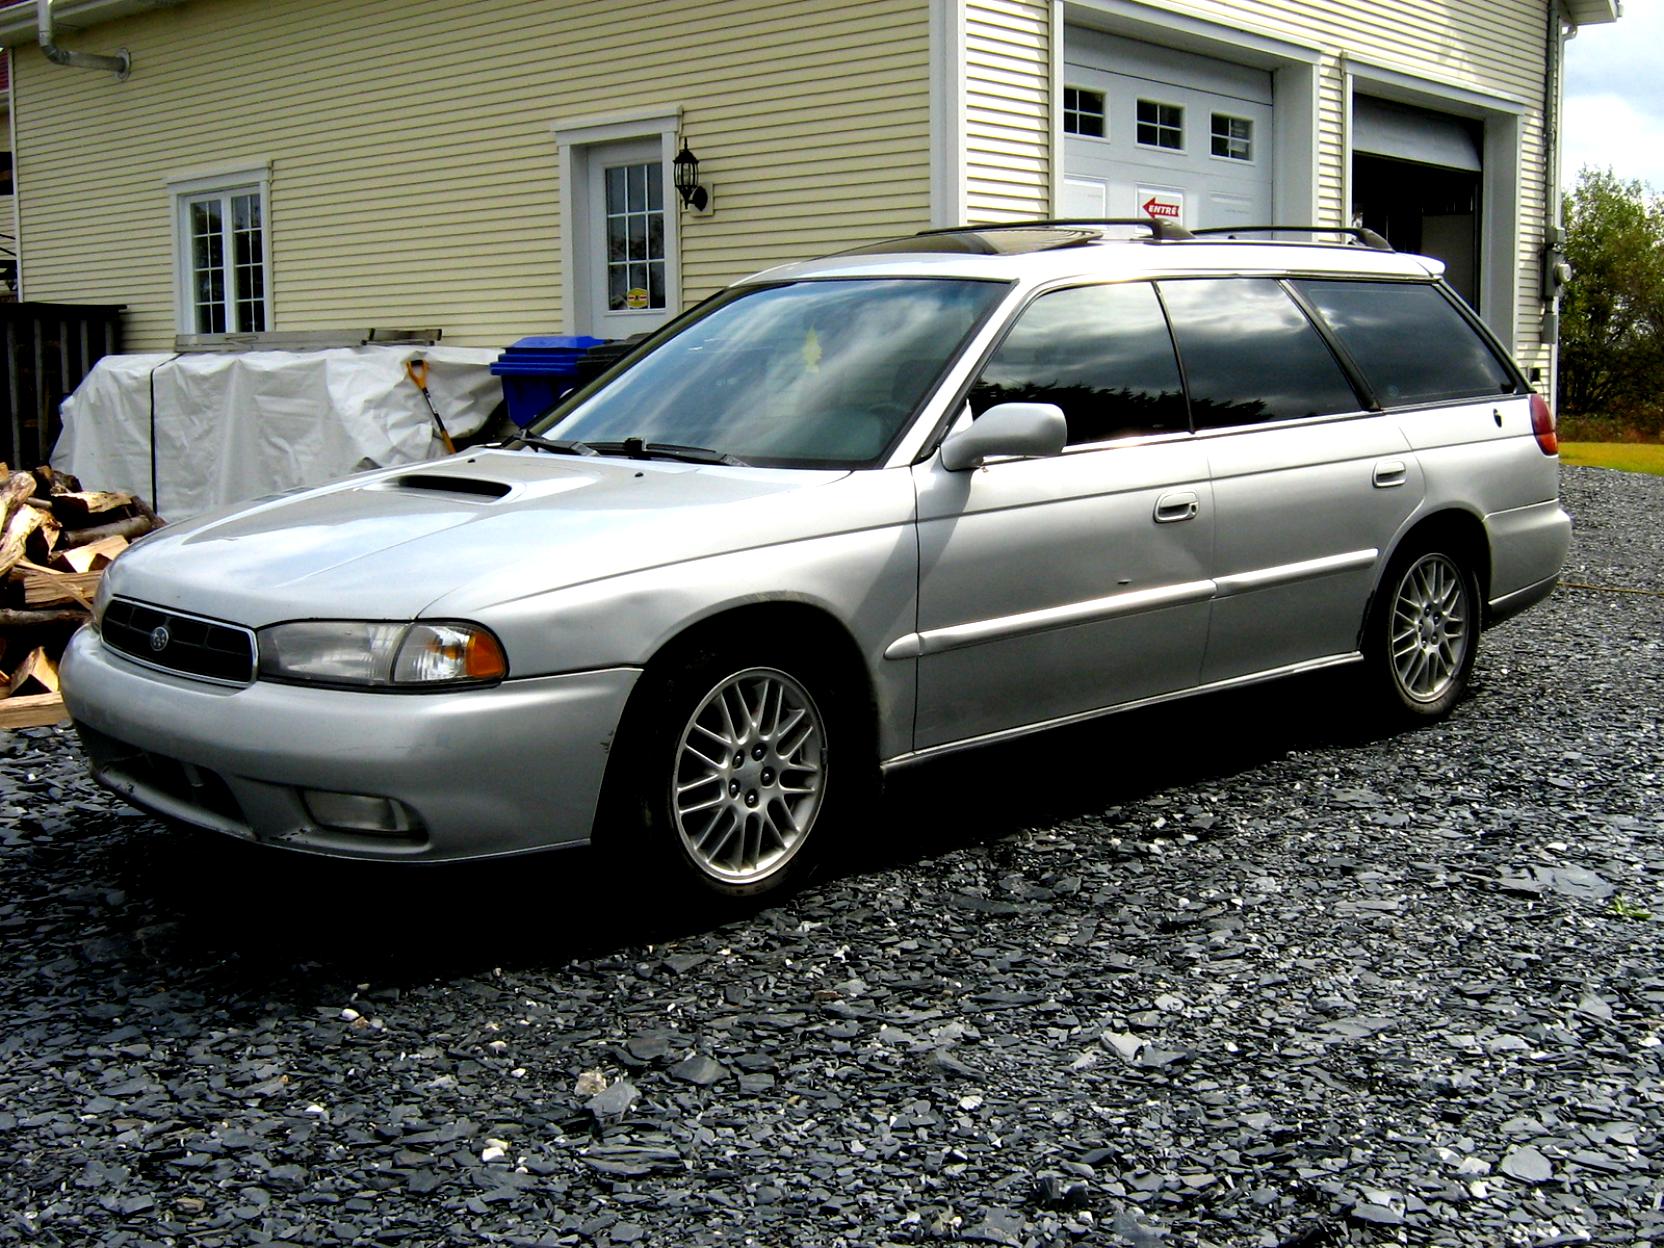 Субару 98 года. Subaru Legacy 1998. Субару Legacy 1998. Субару Легаси 1998. Subaru Legacy 98.